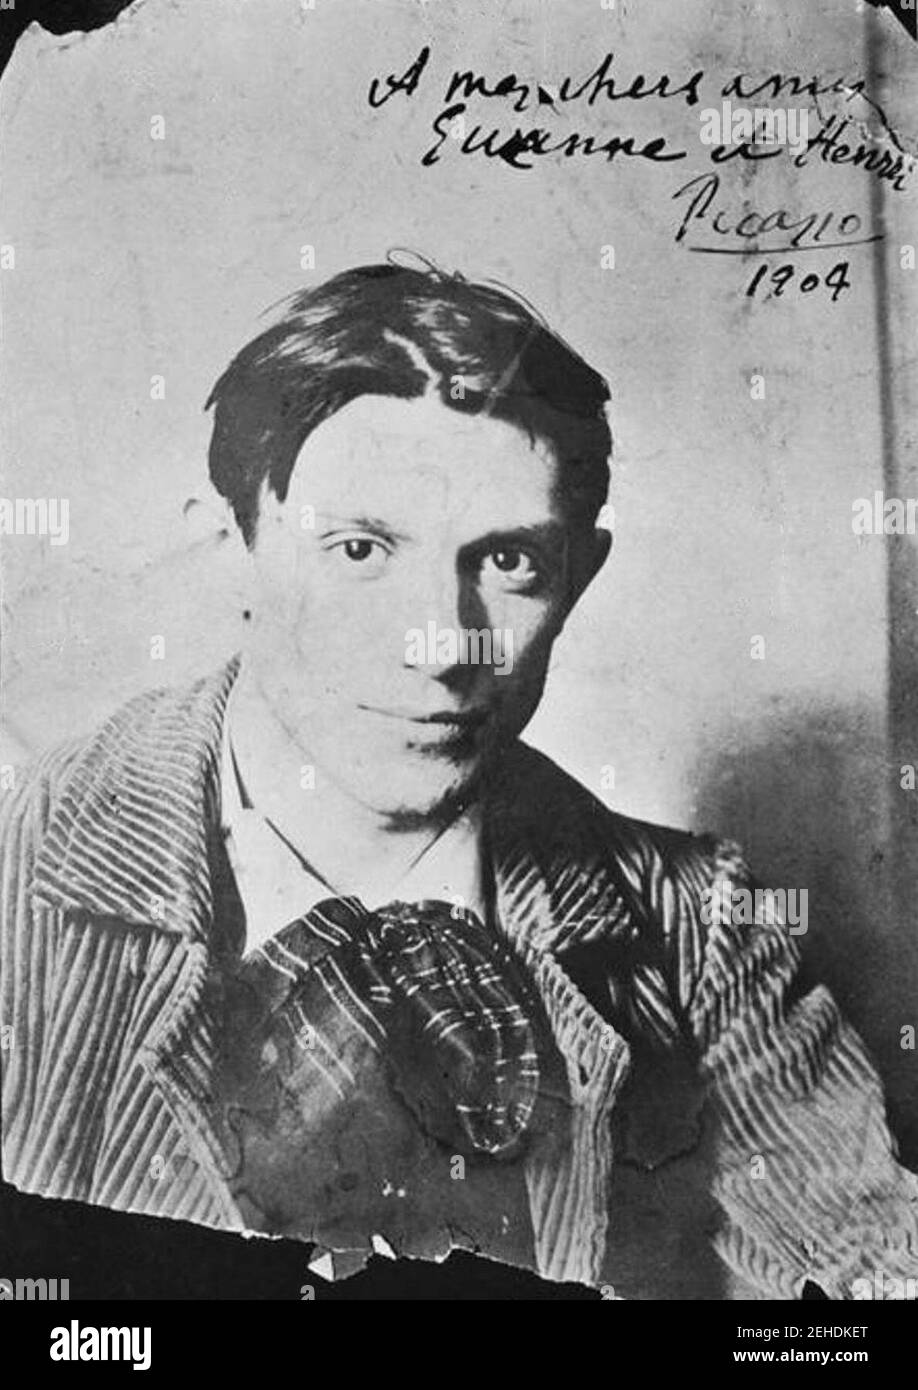 Pablo Picasso, 1904, Paris, photographie de Ricard Canals i Llambí. Banque D'Images